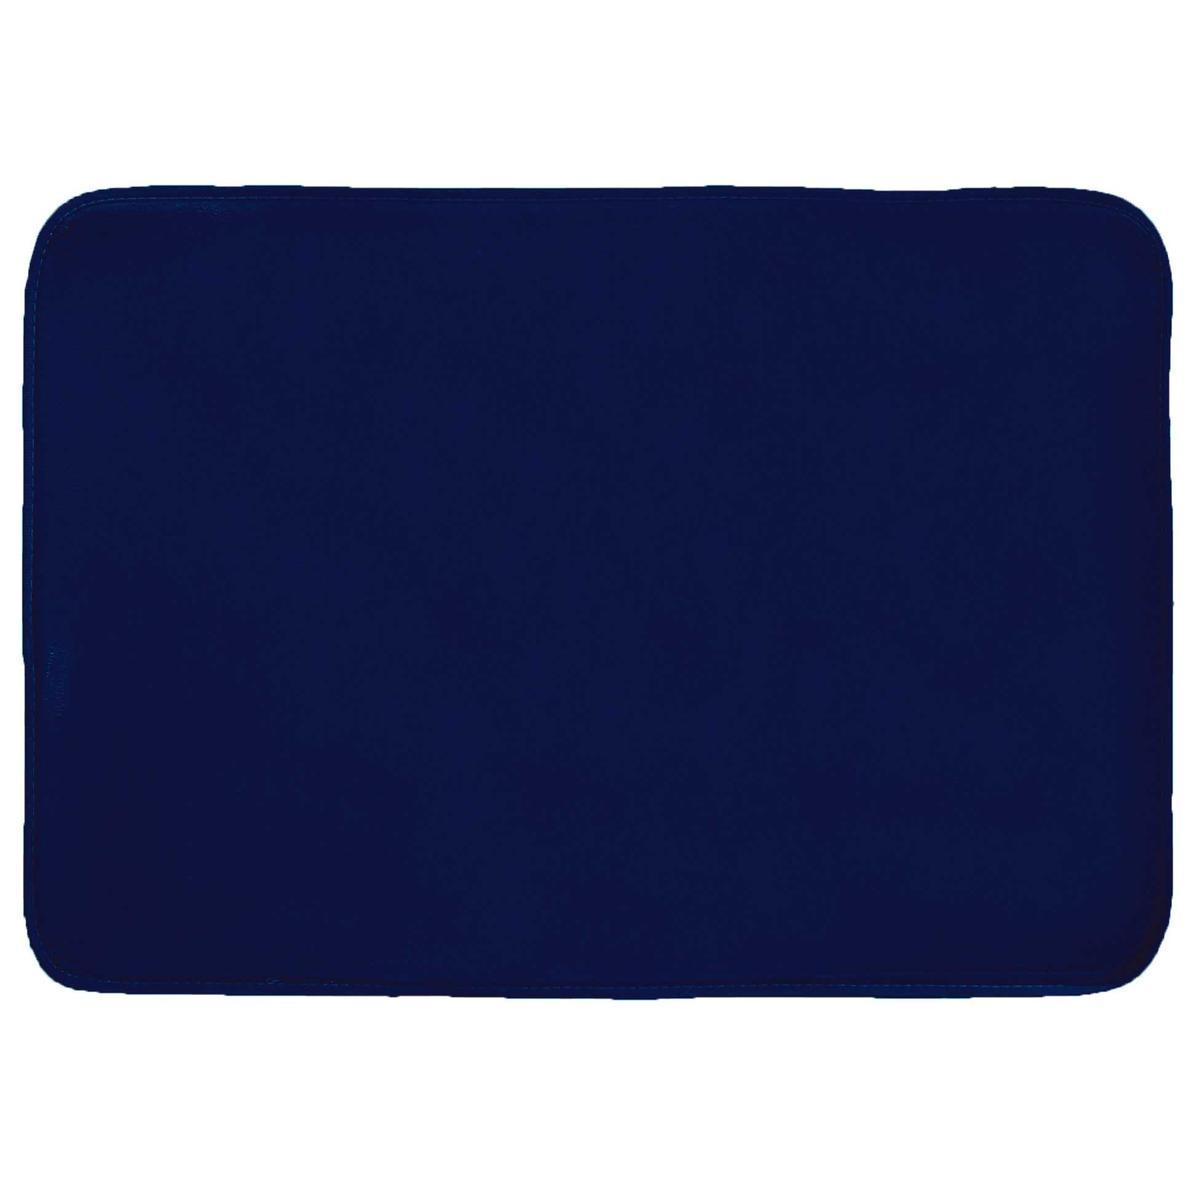 Tapis rectangulaire Louna - 120 x 170 cm - Bleu nuit